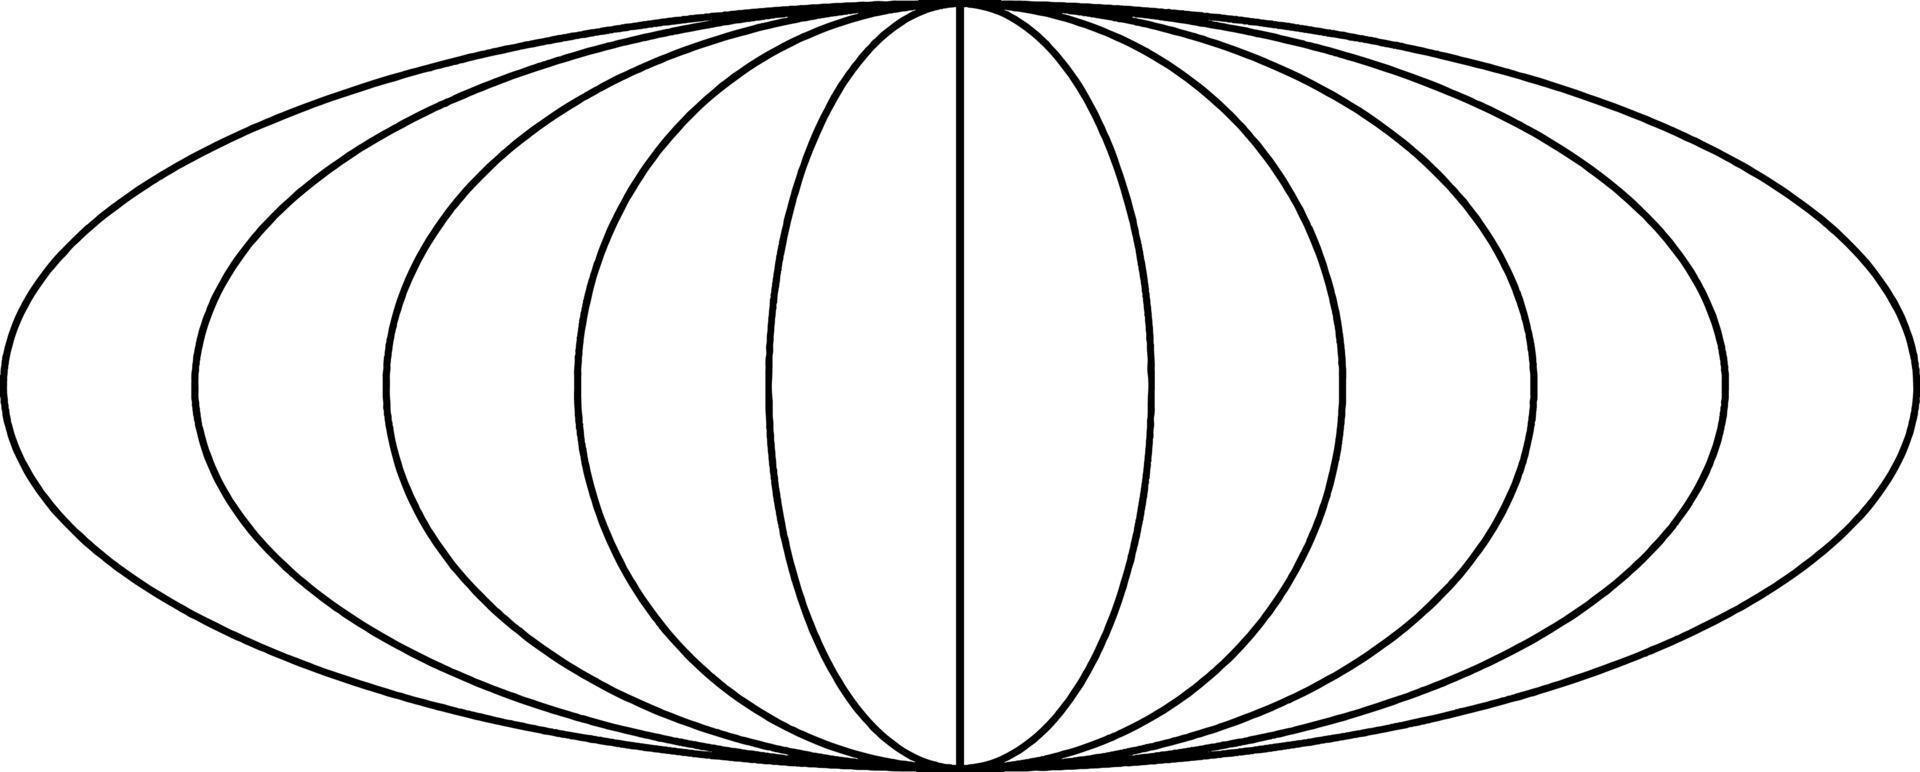 cinq ellipses concentriques, illustration vintage. vecteur